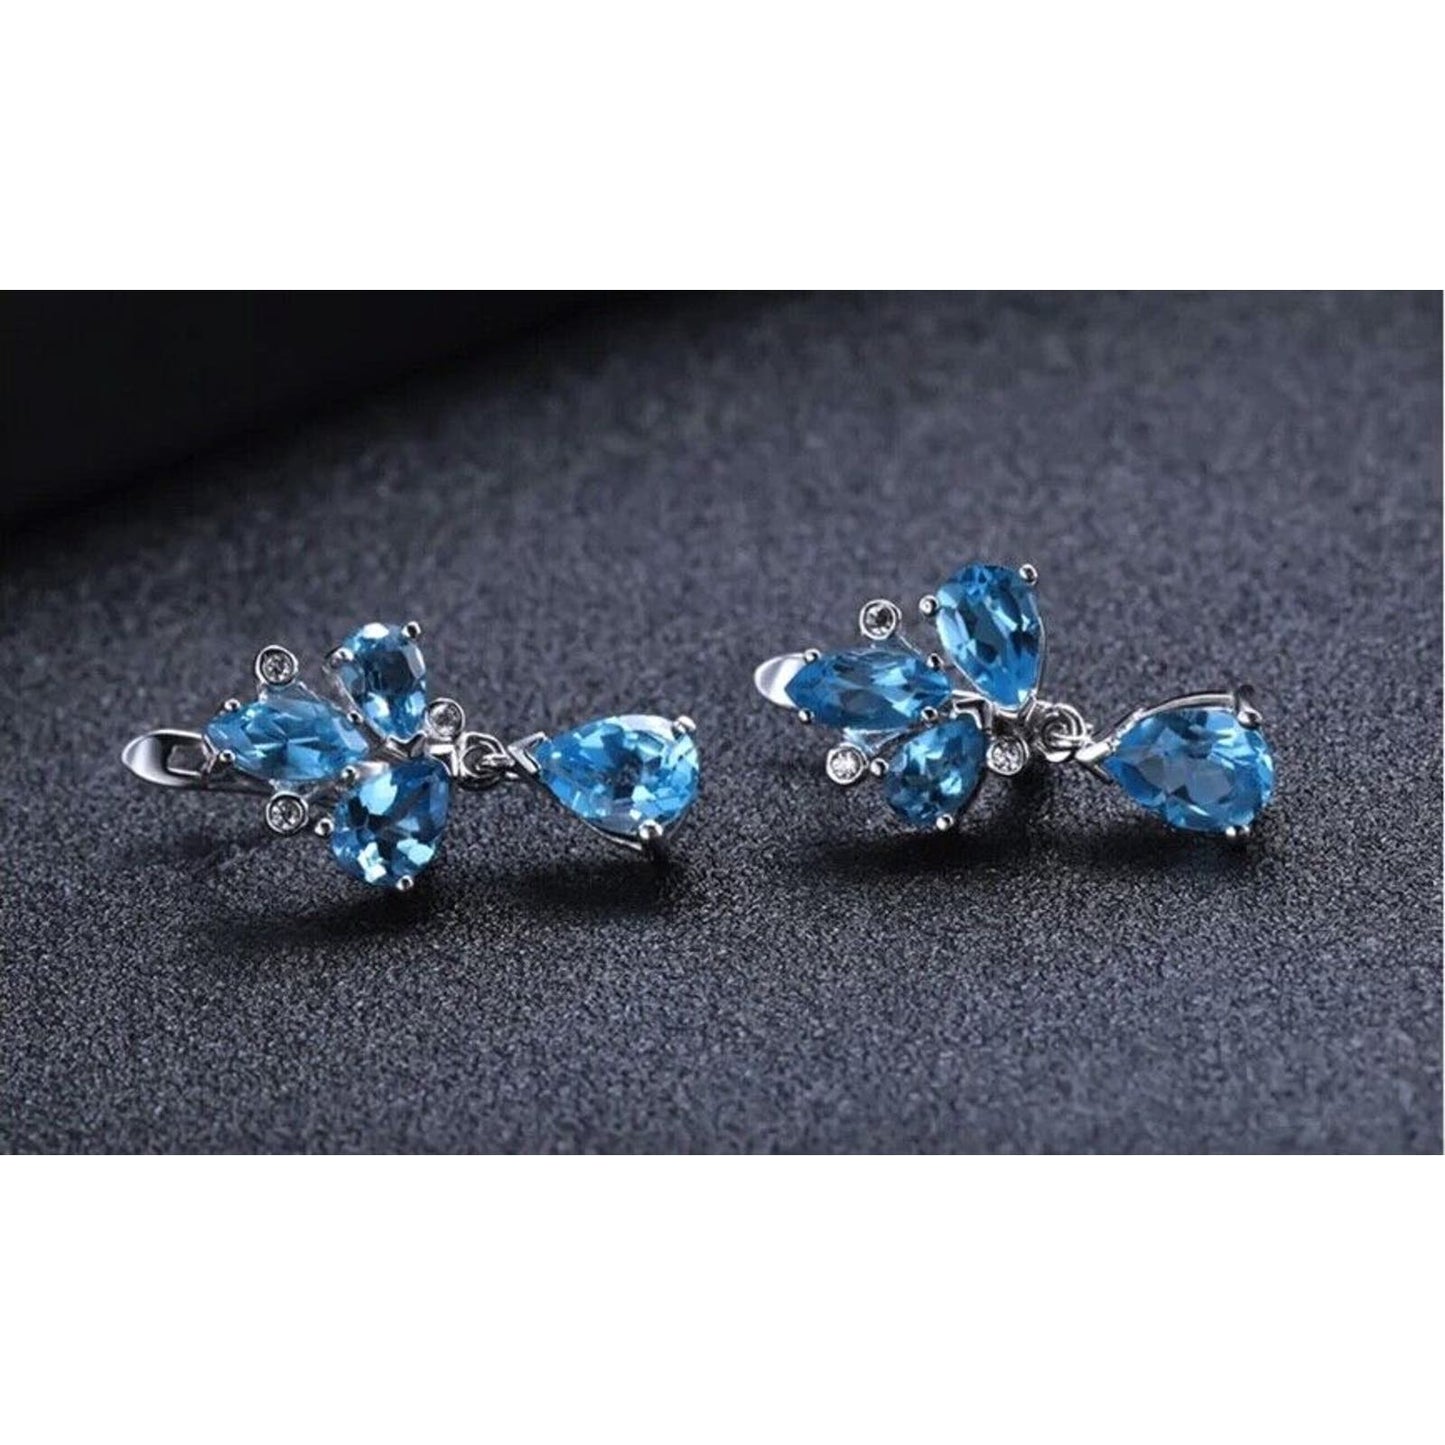 Swiss Blue Topaz, Amethyst, or Garnet Statement Earrings 6x9mm